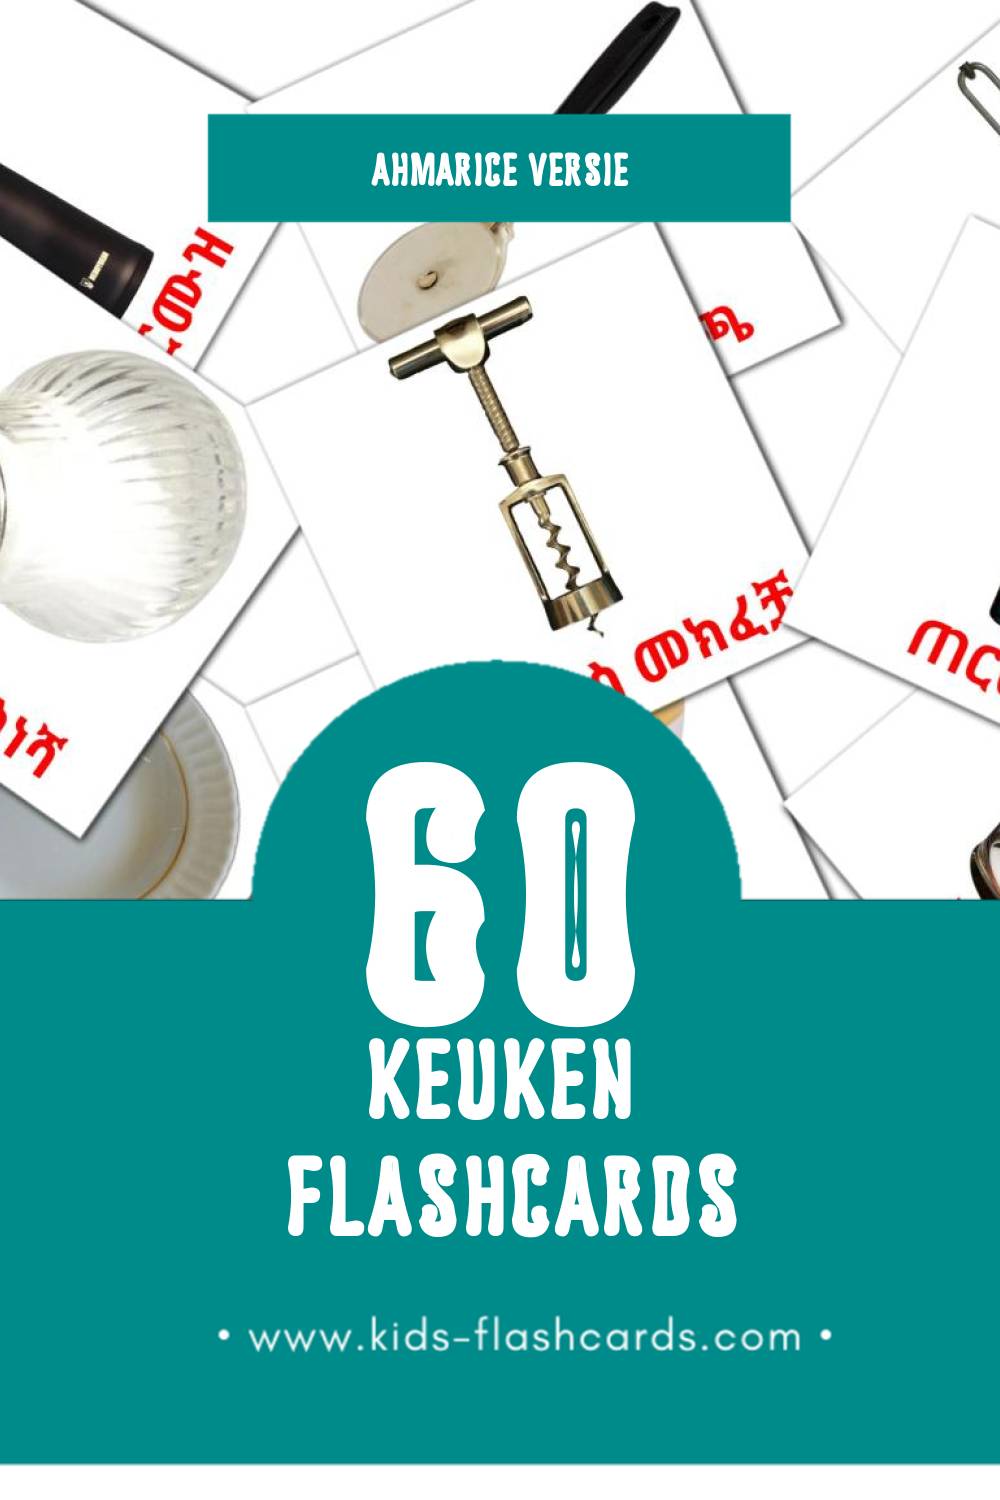 Visuele ወጥ ቤት Flashcards voor Kleuters (60 kaarten in het Ahmaric)